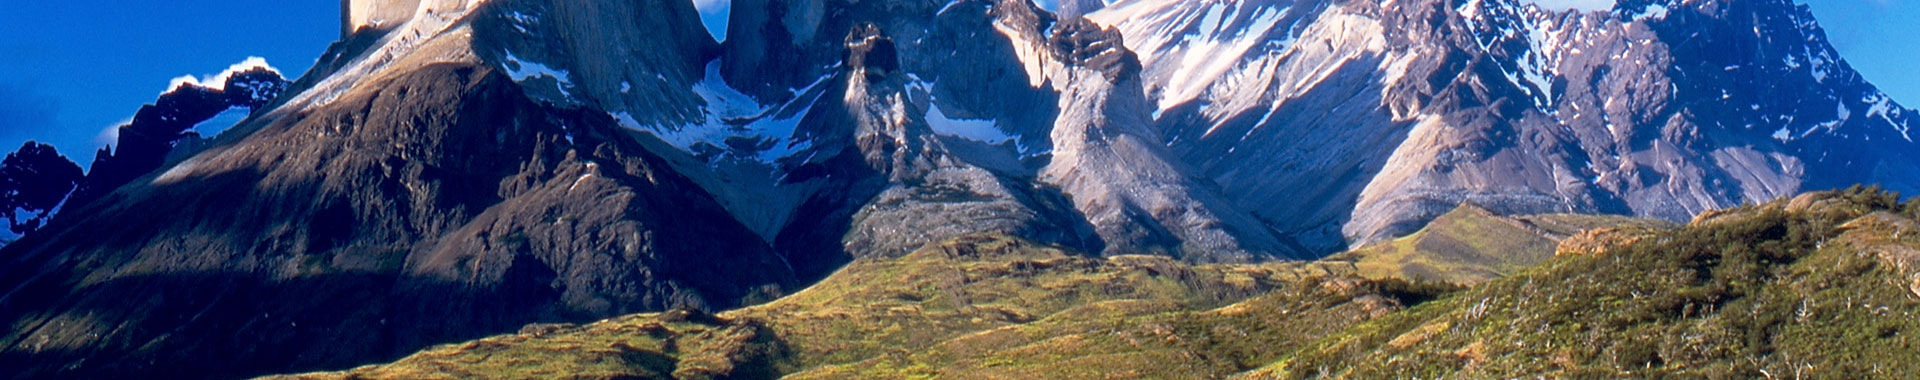 Chile - Patagonia - Paquetes - Maravillosa